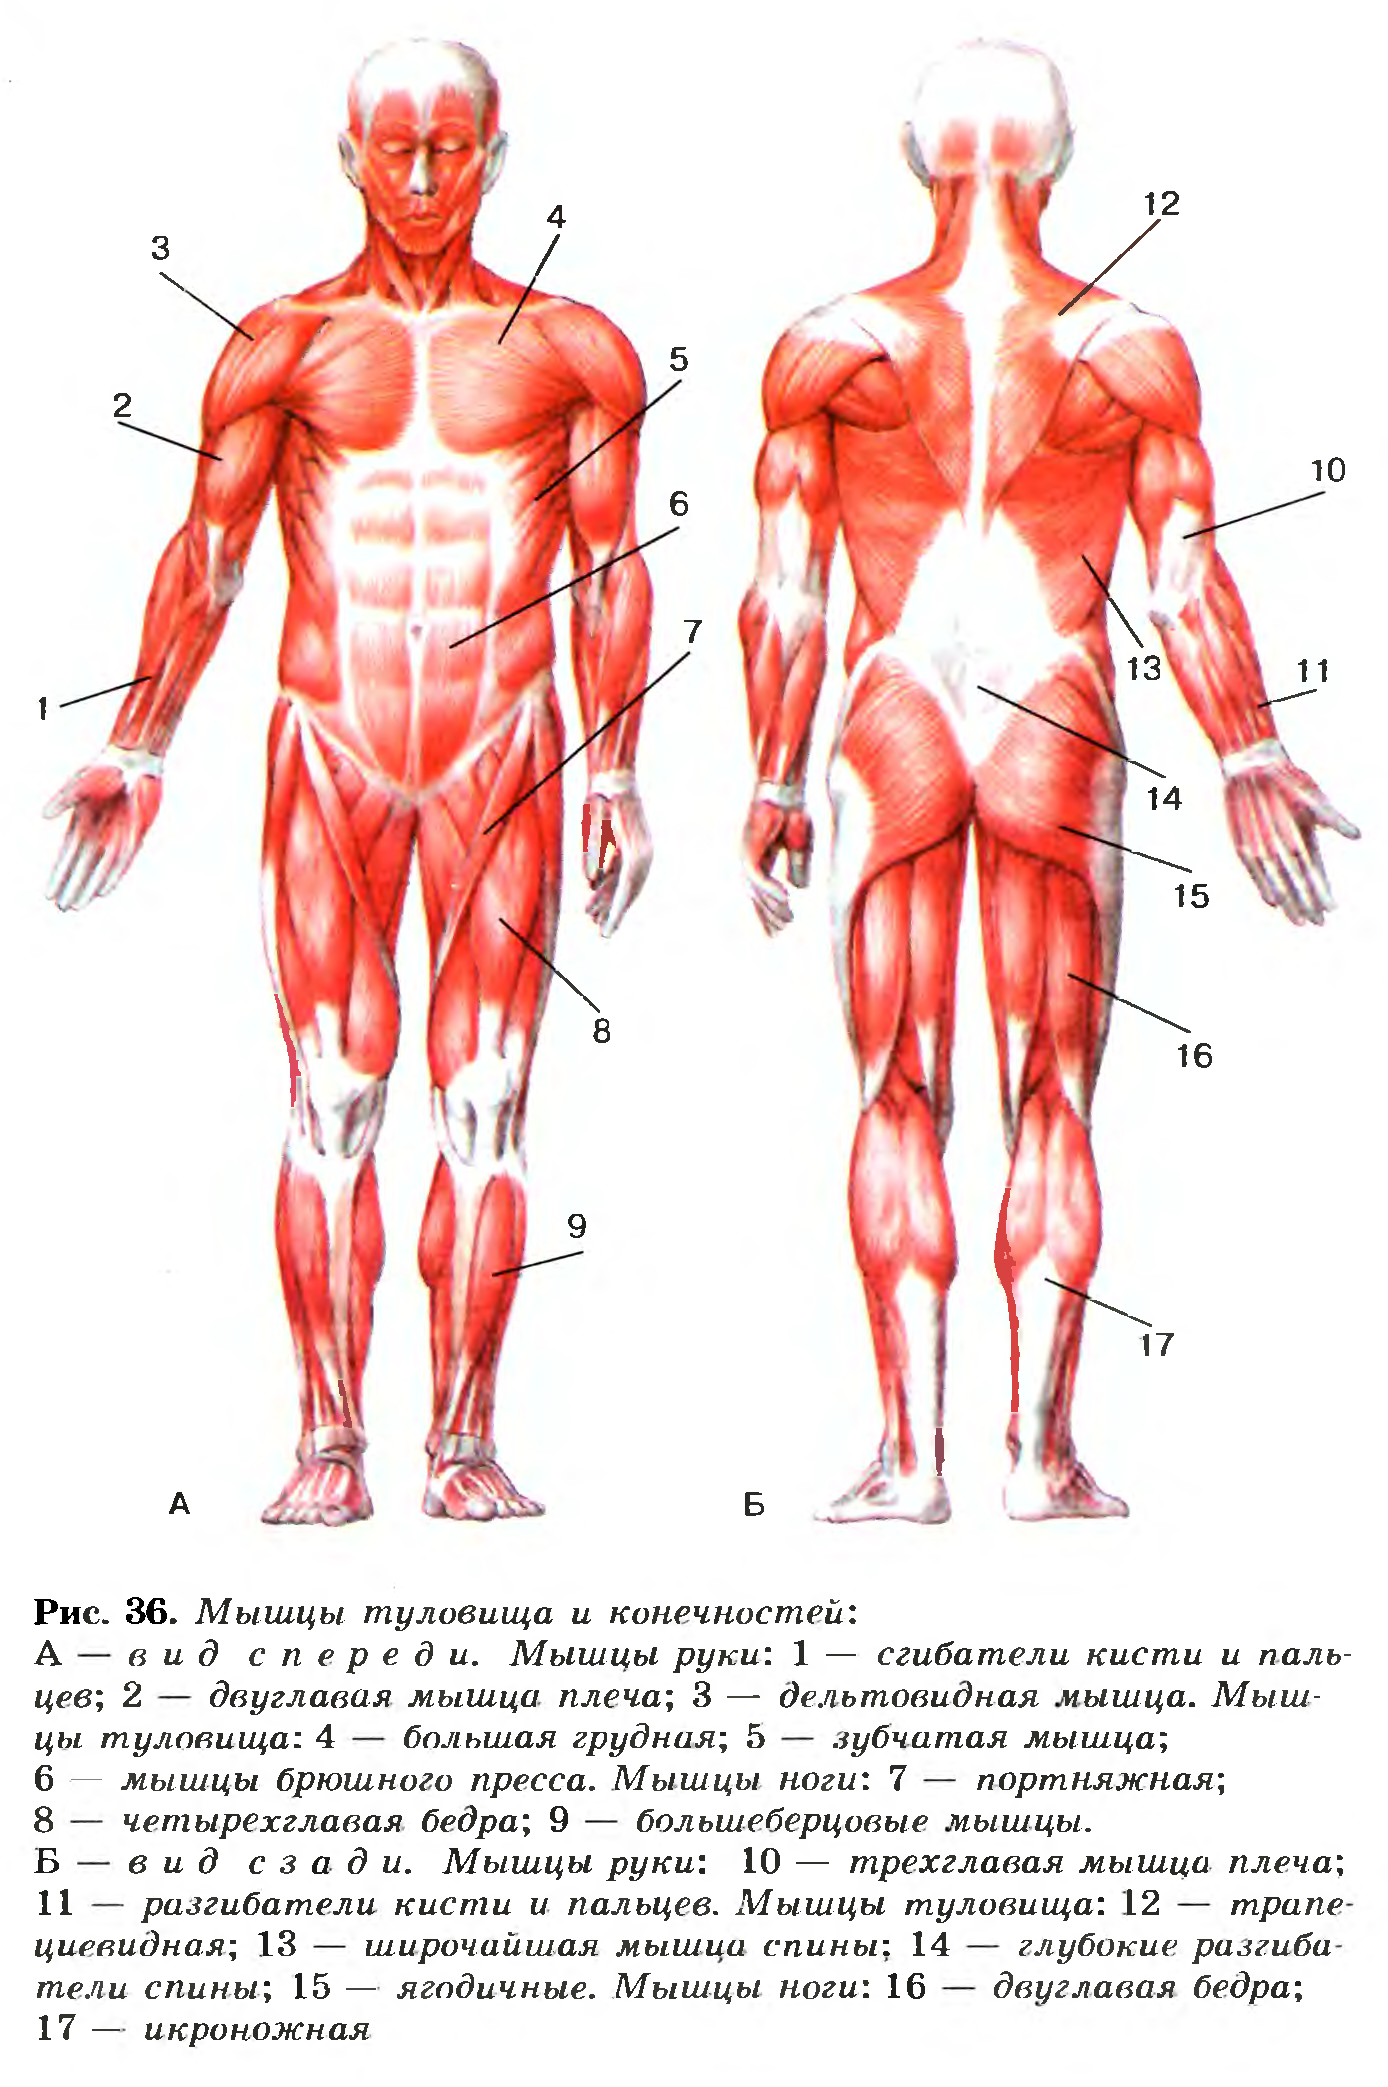 Какая мышца изображена на рисунке